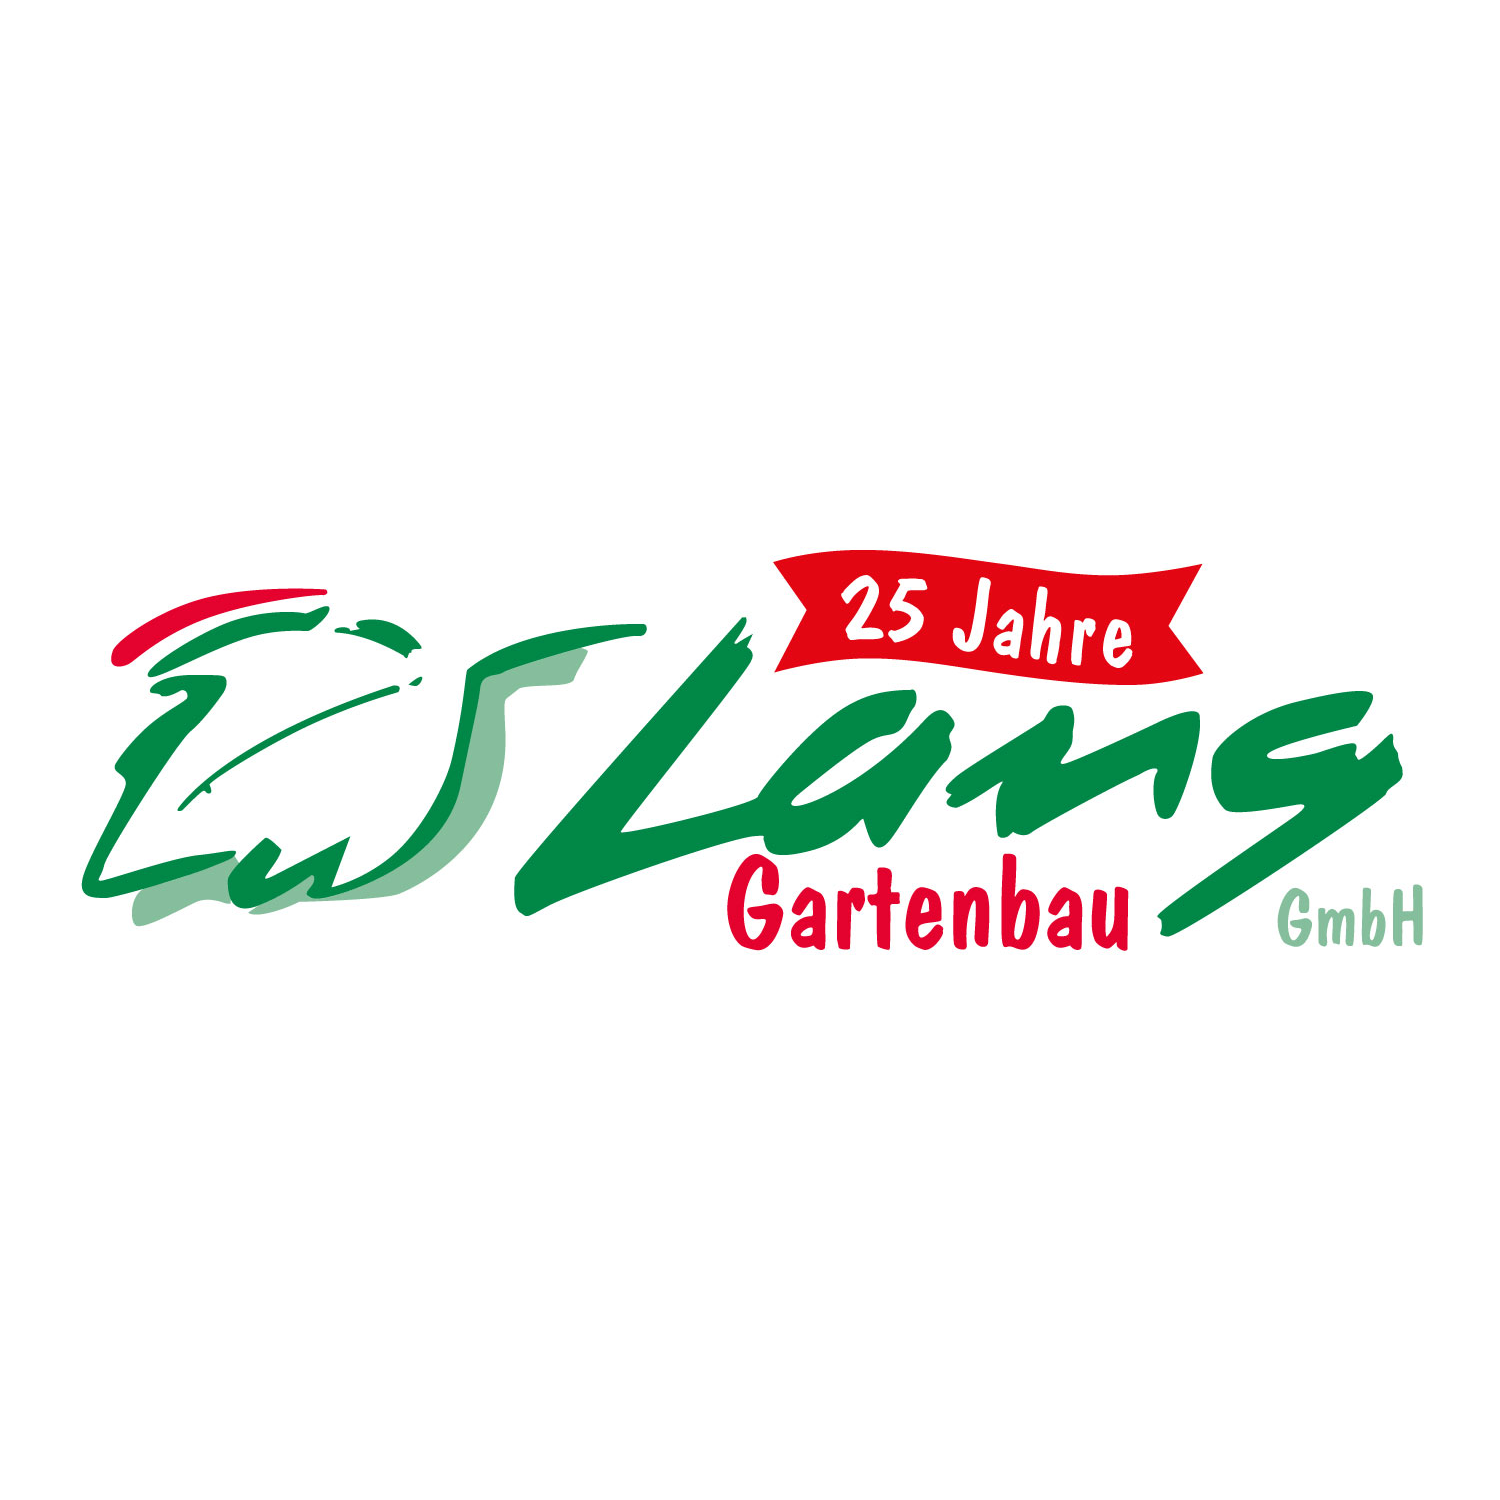 Gartenbau Lang GmbH in Offenburg - Logo